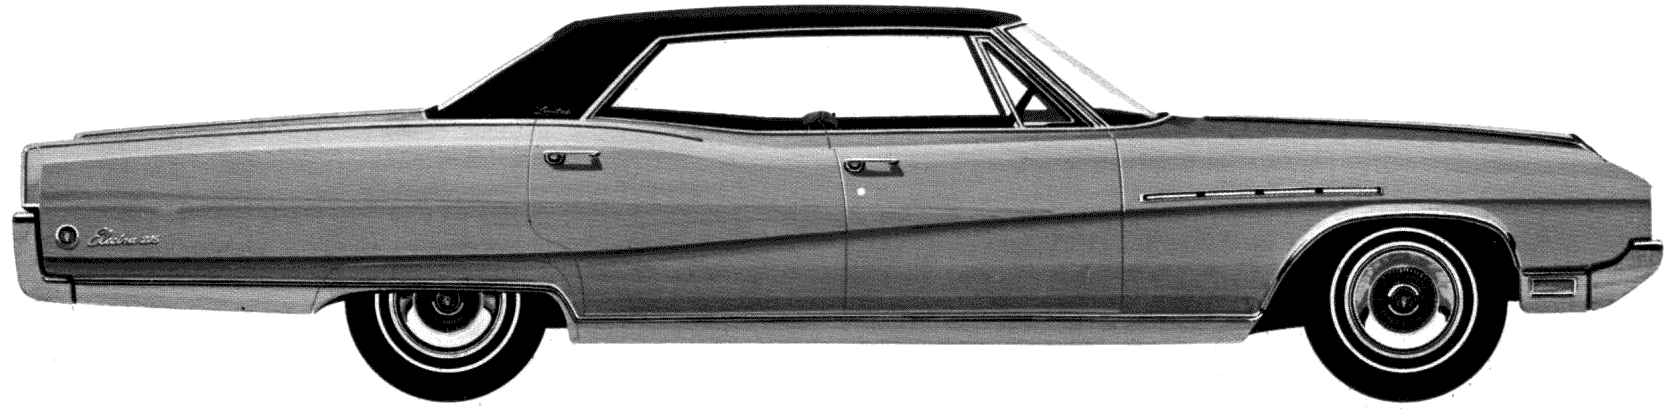 Karozza Buick Electra 225 Limited 4-Door Hardtop 1968 